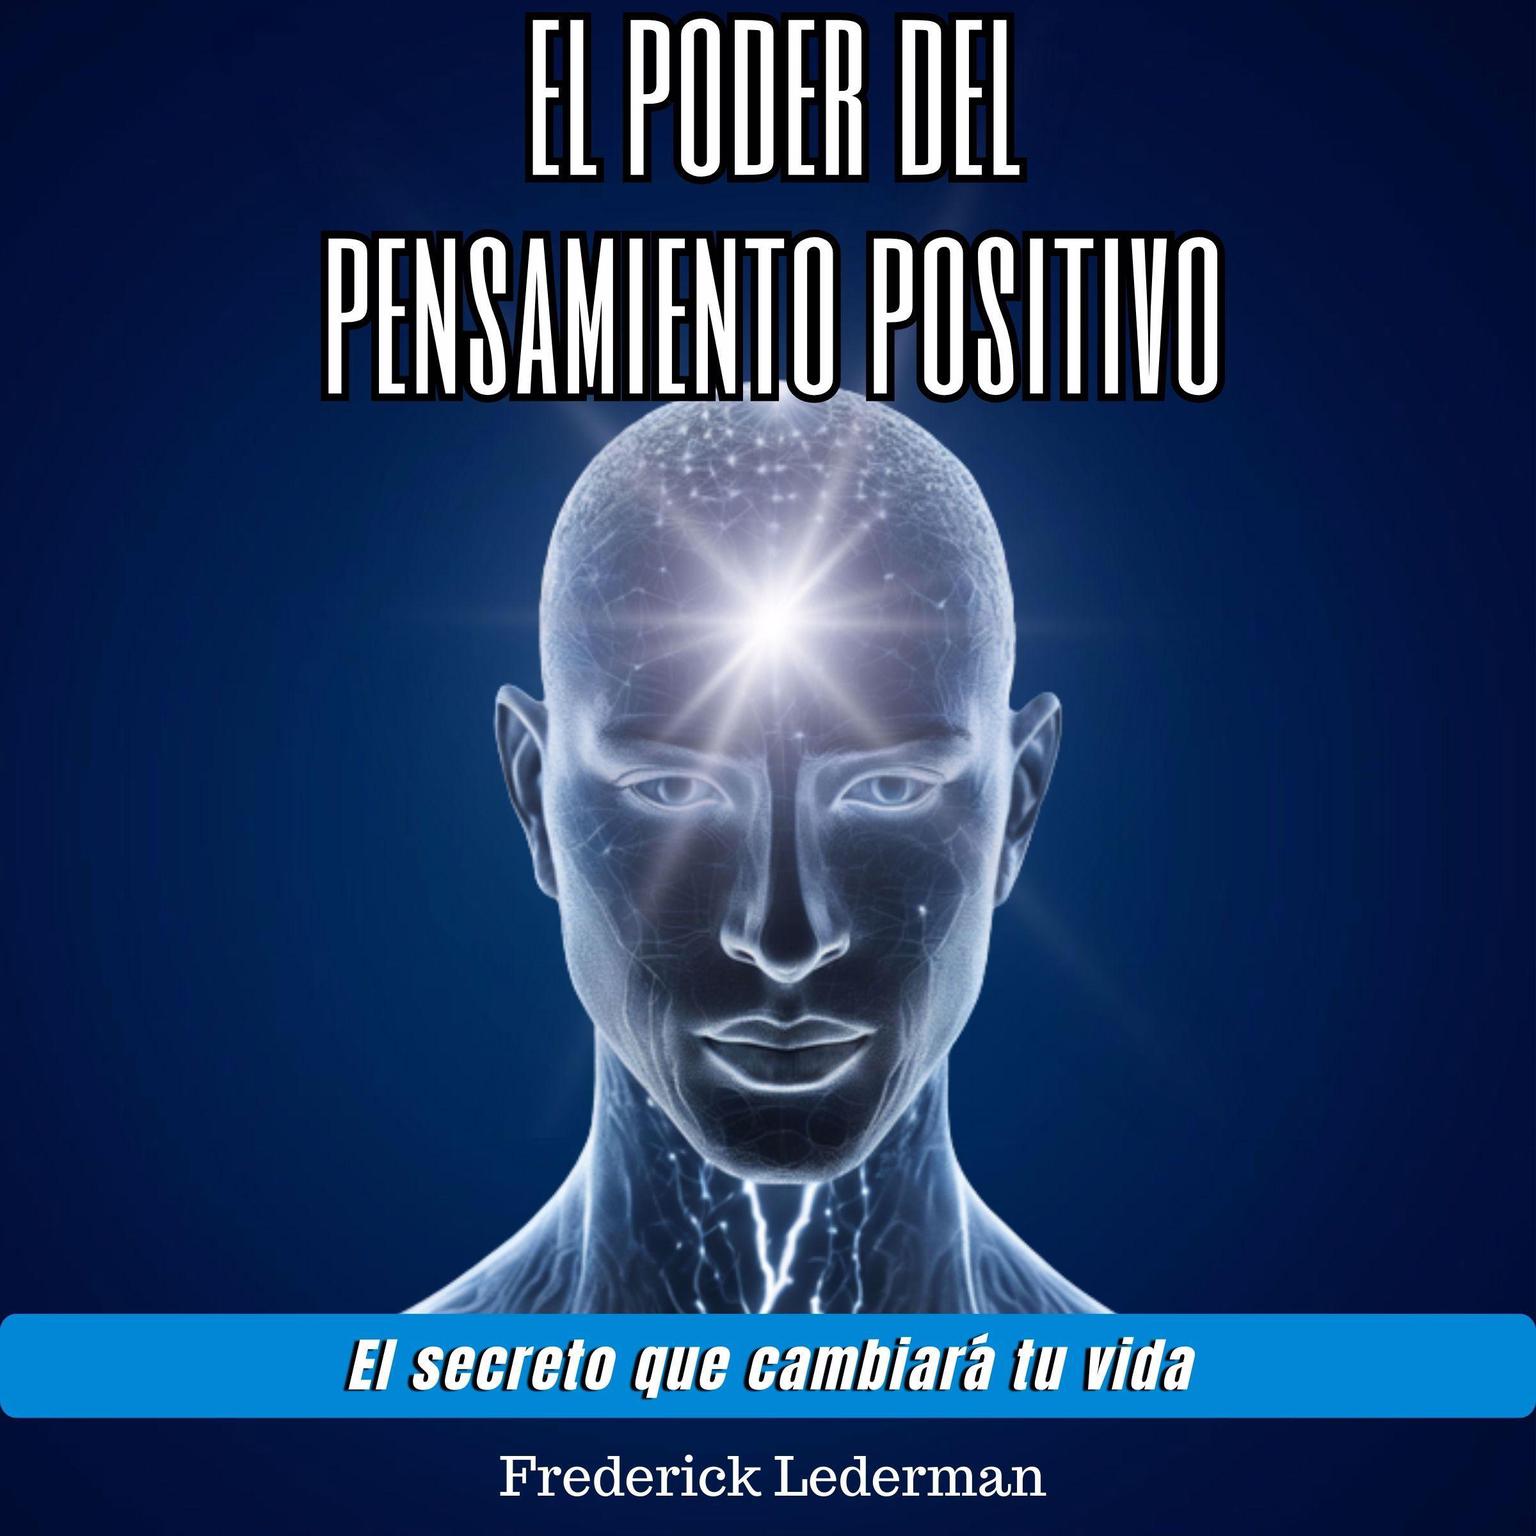 El poder del pensamiento positivo. El secreto que cambiará tu vida. Audiobook, by Frederick Lederman